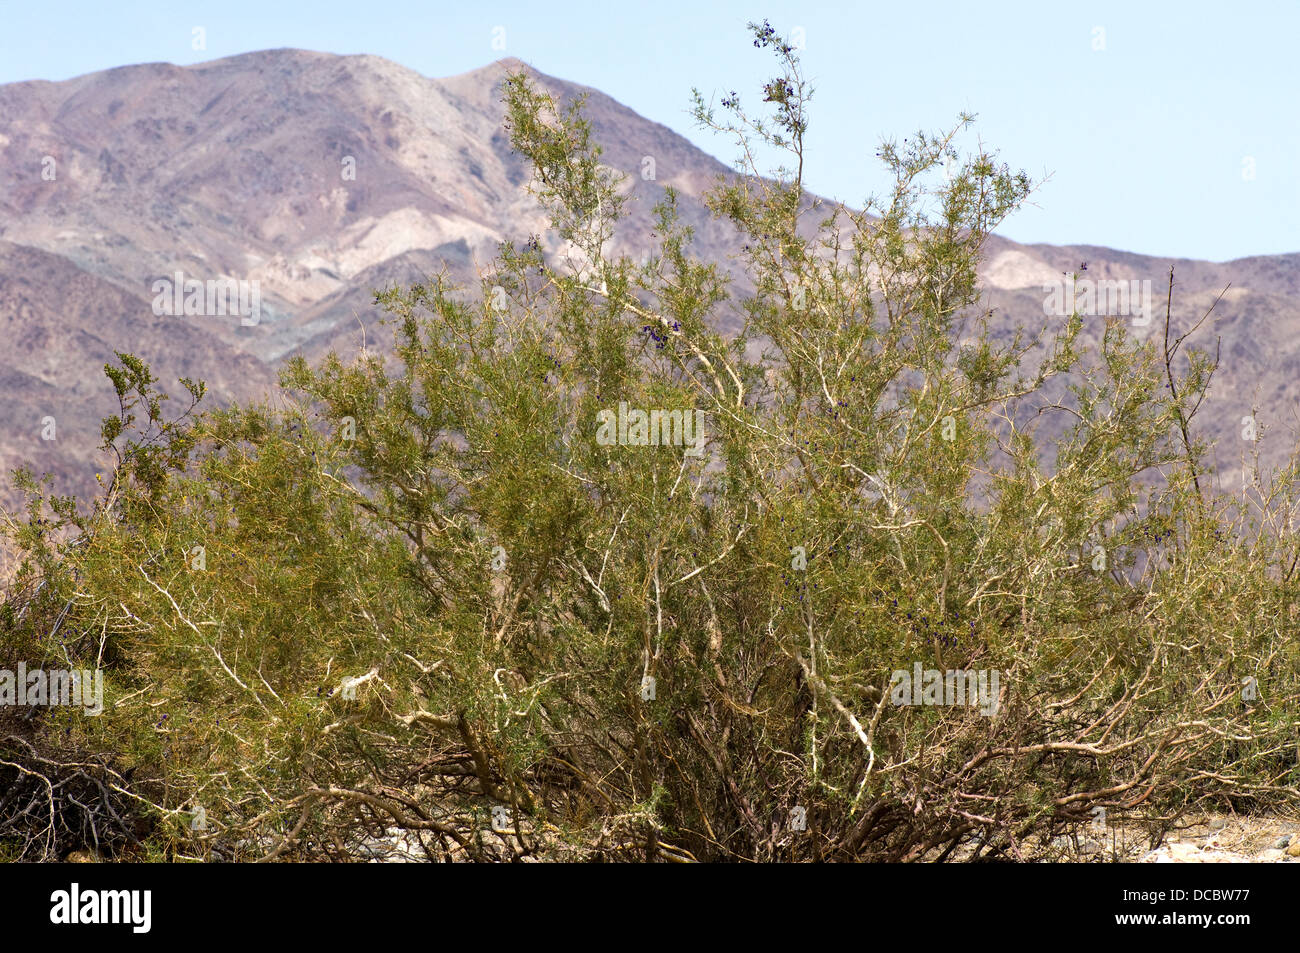 Indigo bush in Colorado desert Stock Photo